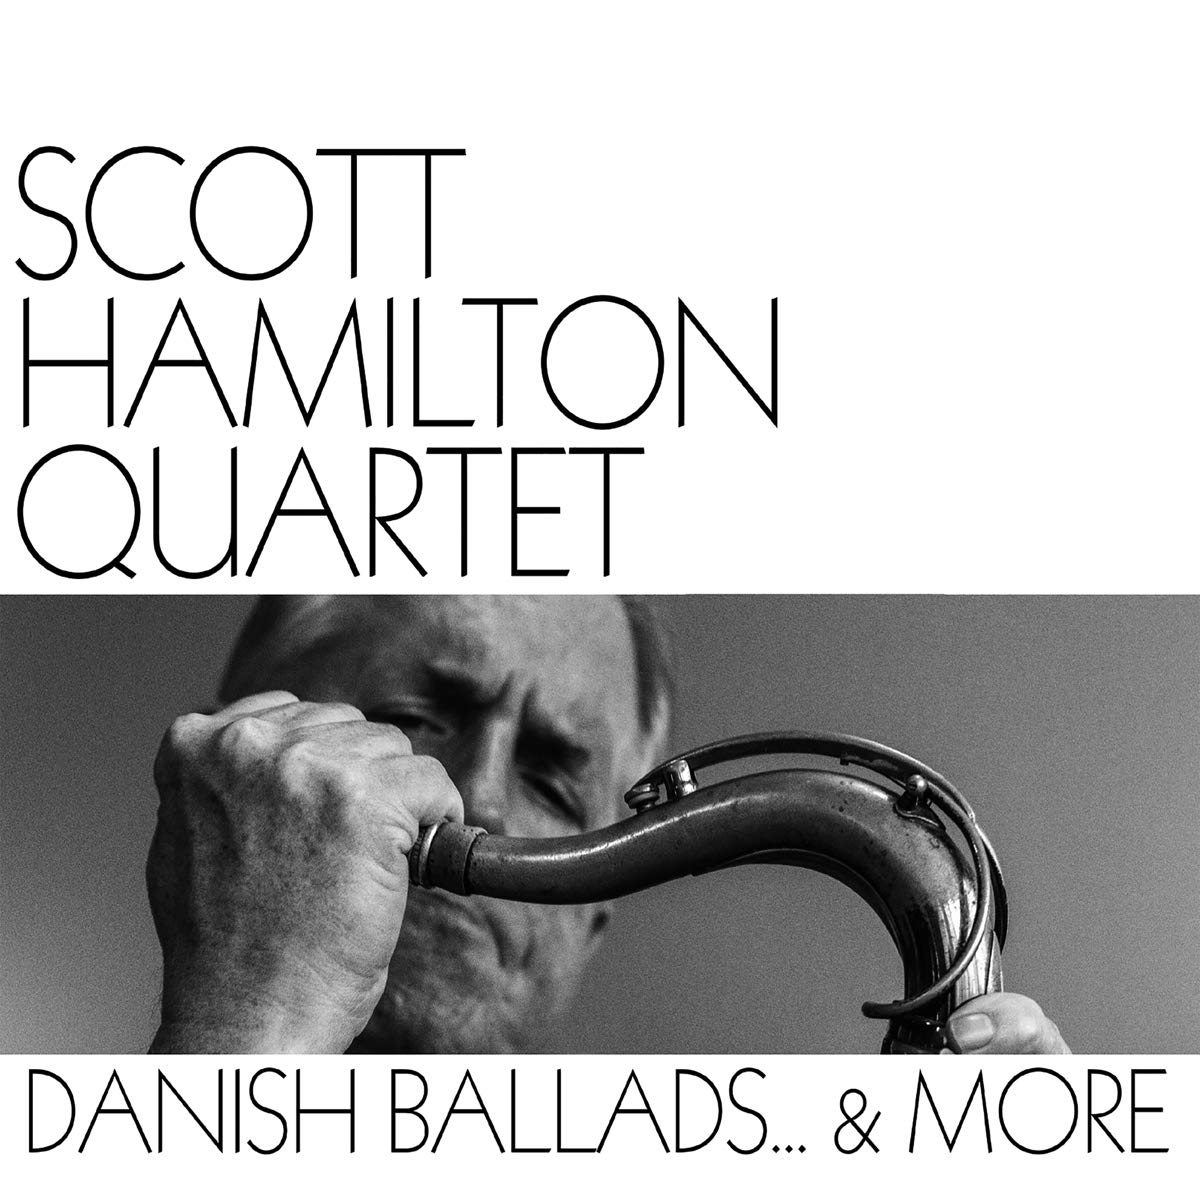 SCOTT HAMILTON - Danish Ballads & More cover 